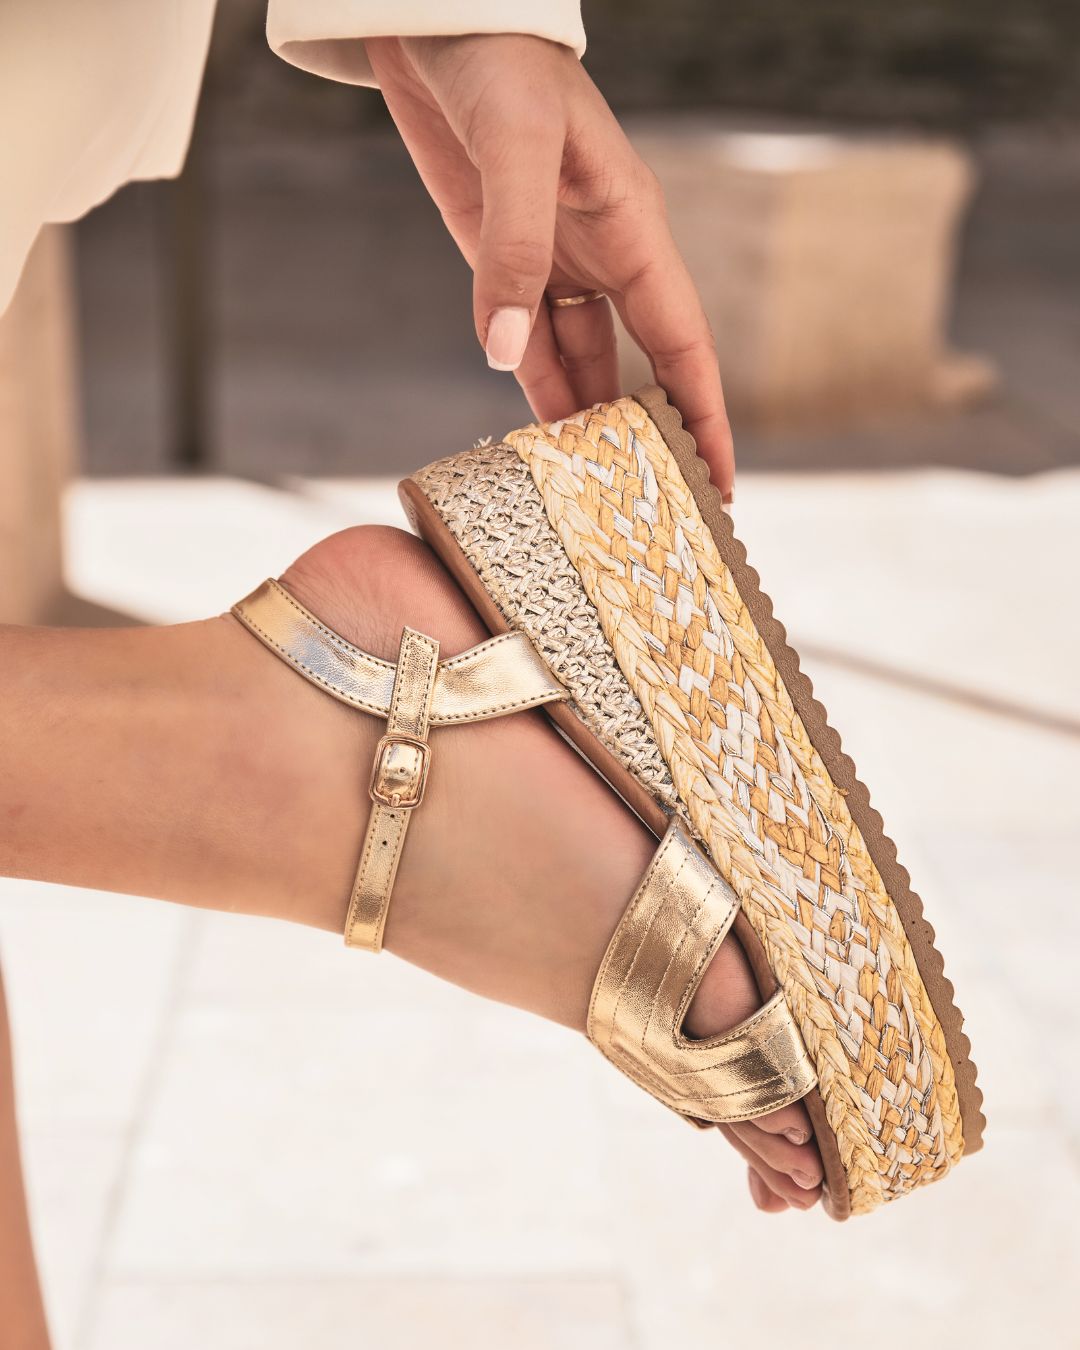 Sandale femme compensée doré - Amandine - Casualmode.fr